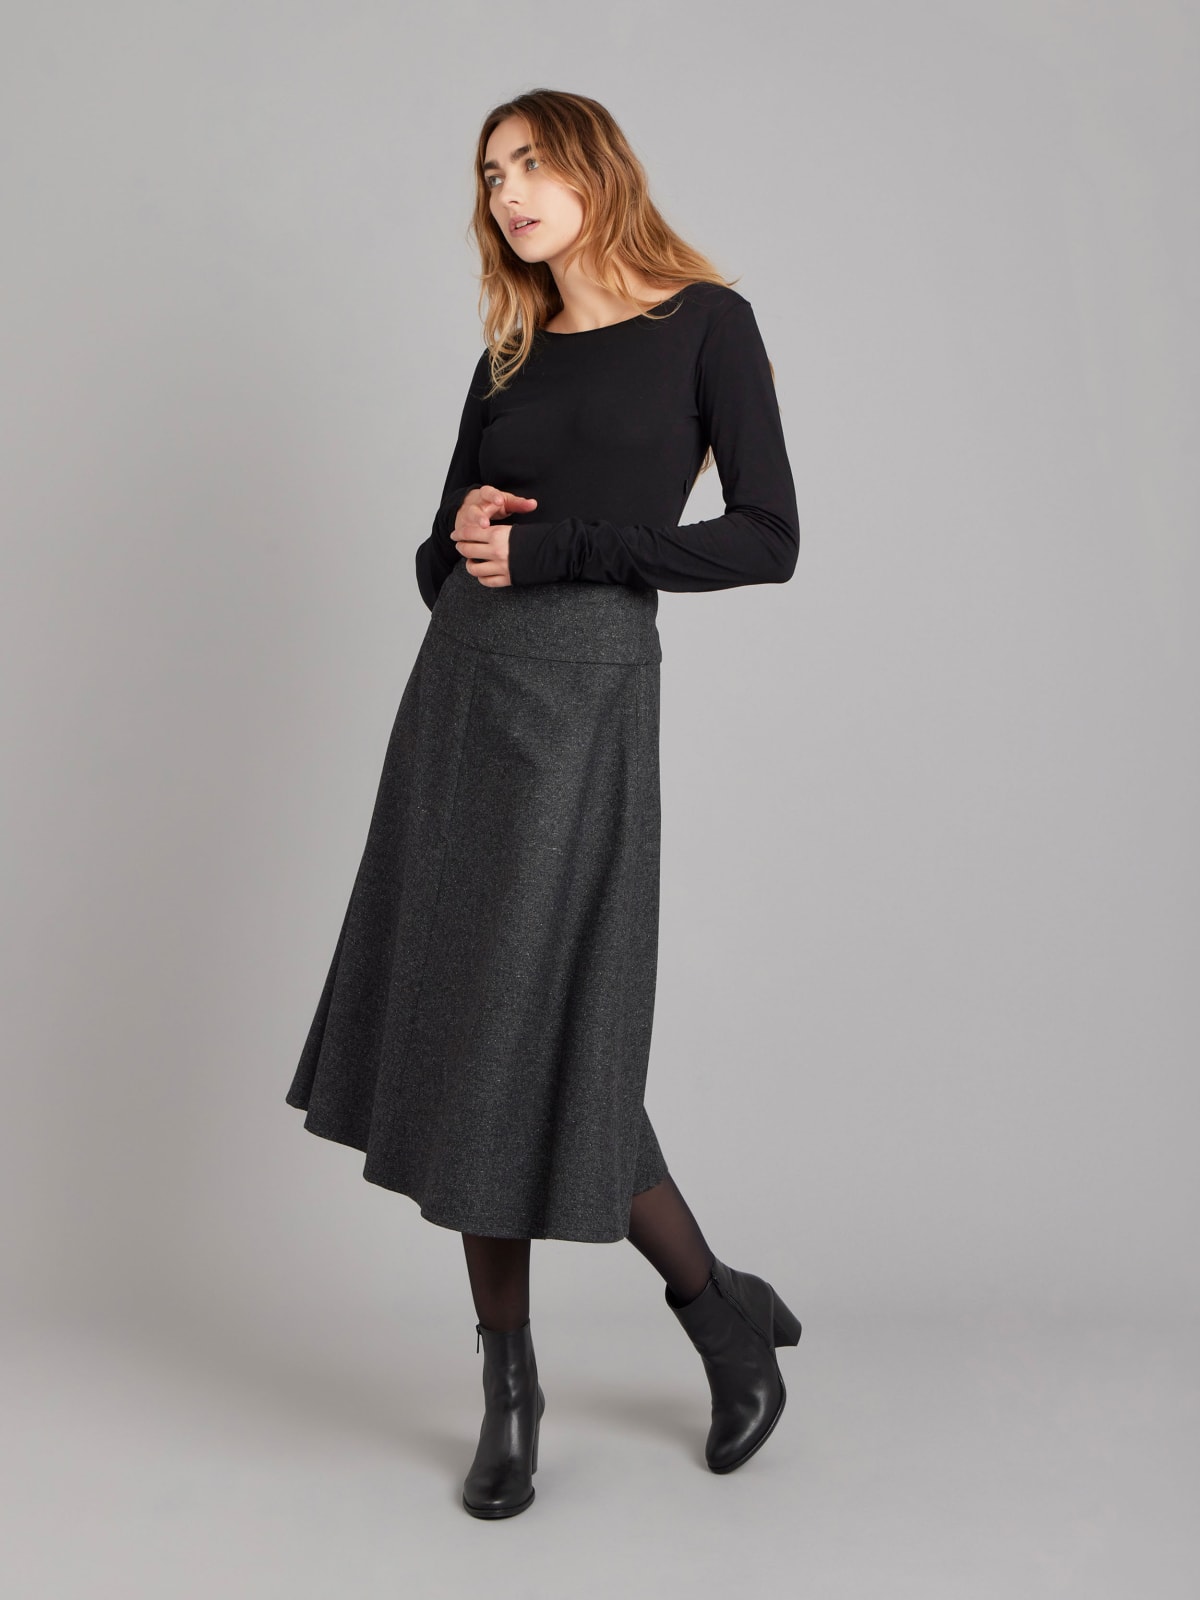 grey tweed woolen skirt